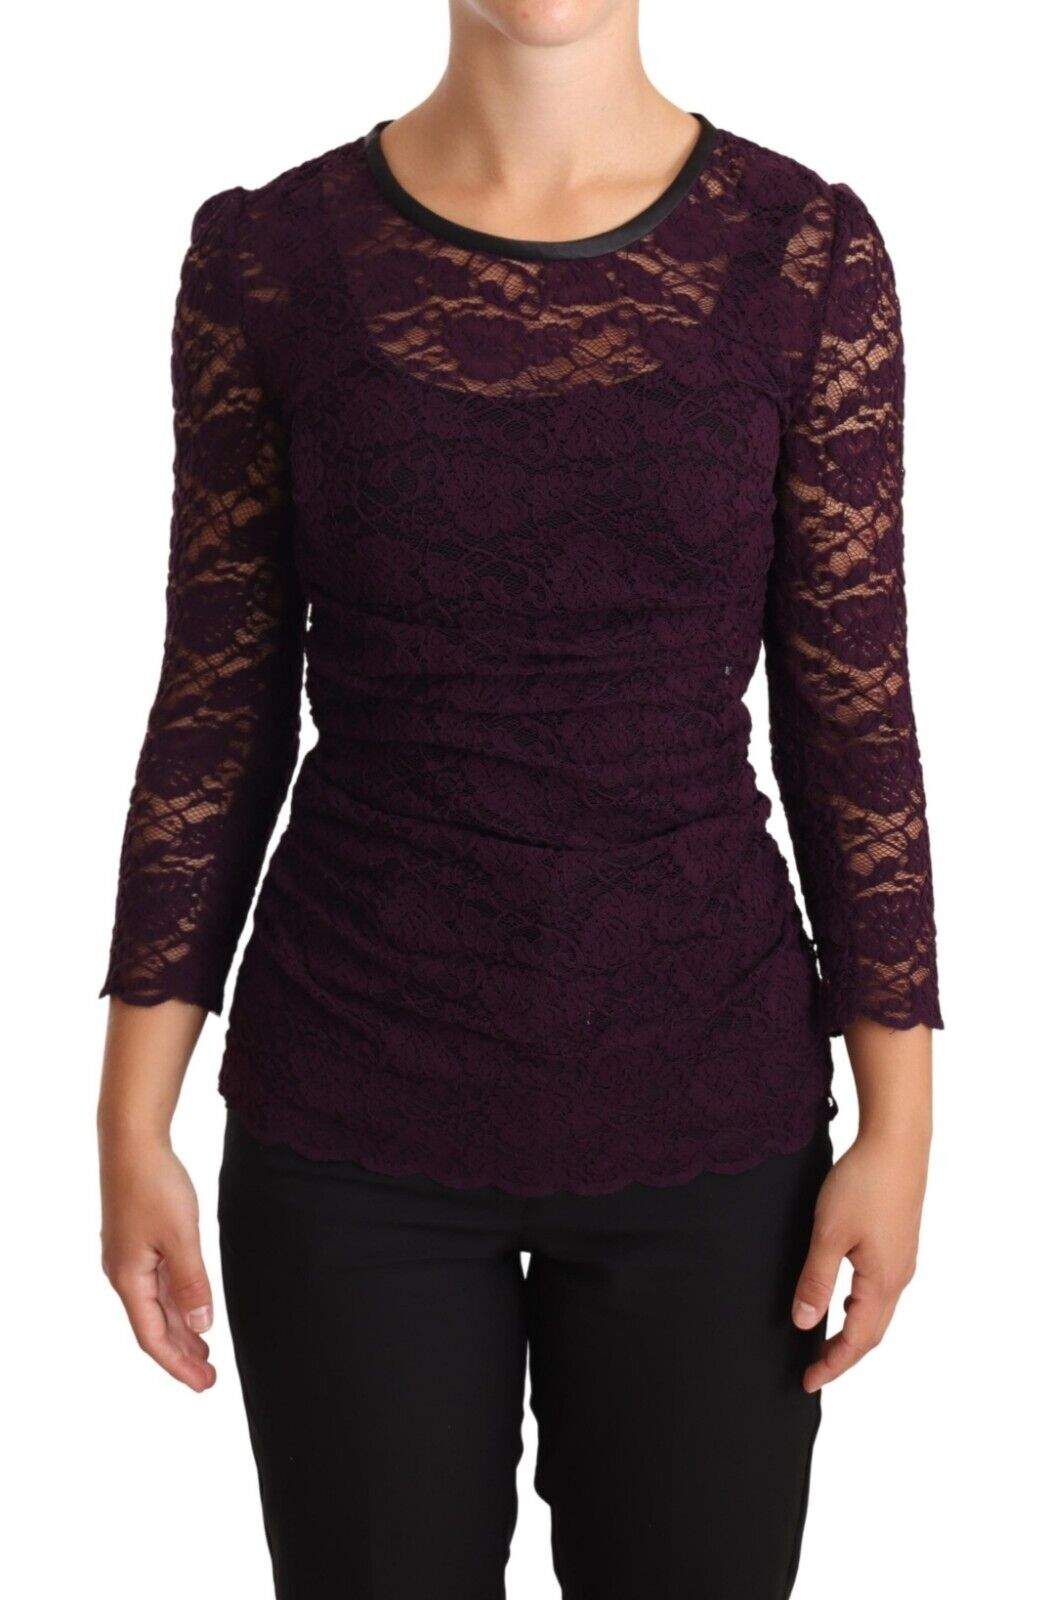 Dolce & Gabbana Purple Lace Long Sleeve Top Blouse Dolce & Gabbana, feed-1, IT38|XS, Purple, Tops & T-Shirts - Women - Clothing at SEYMAYKA